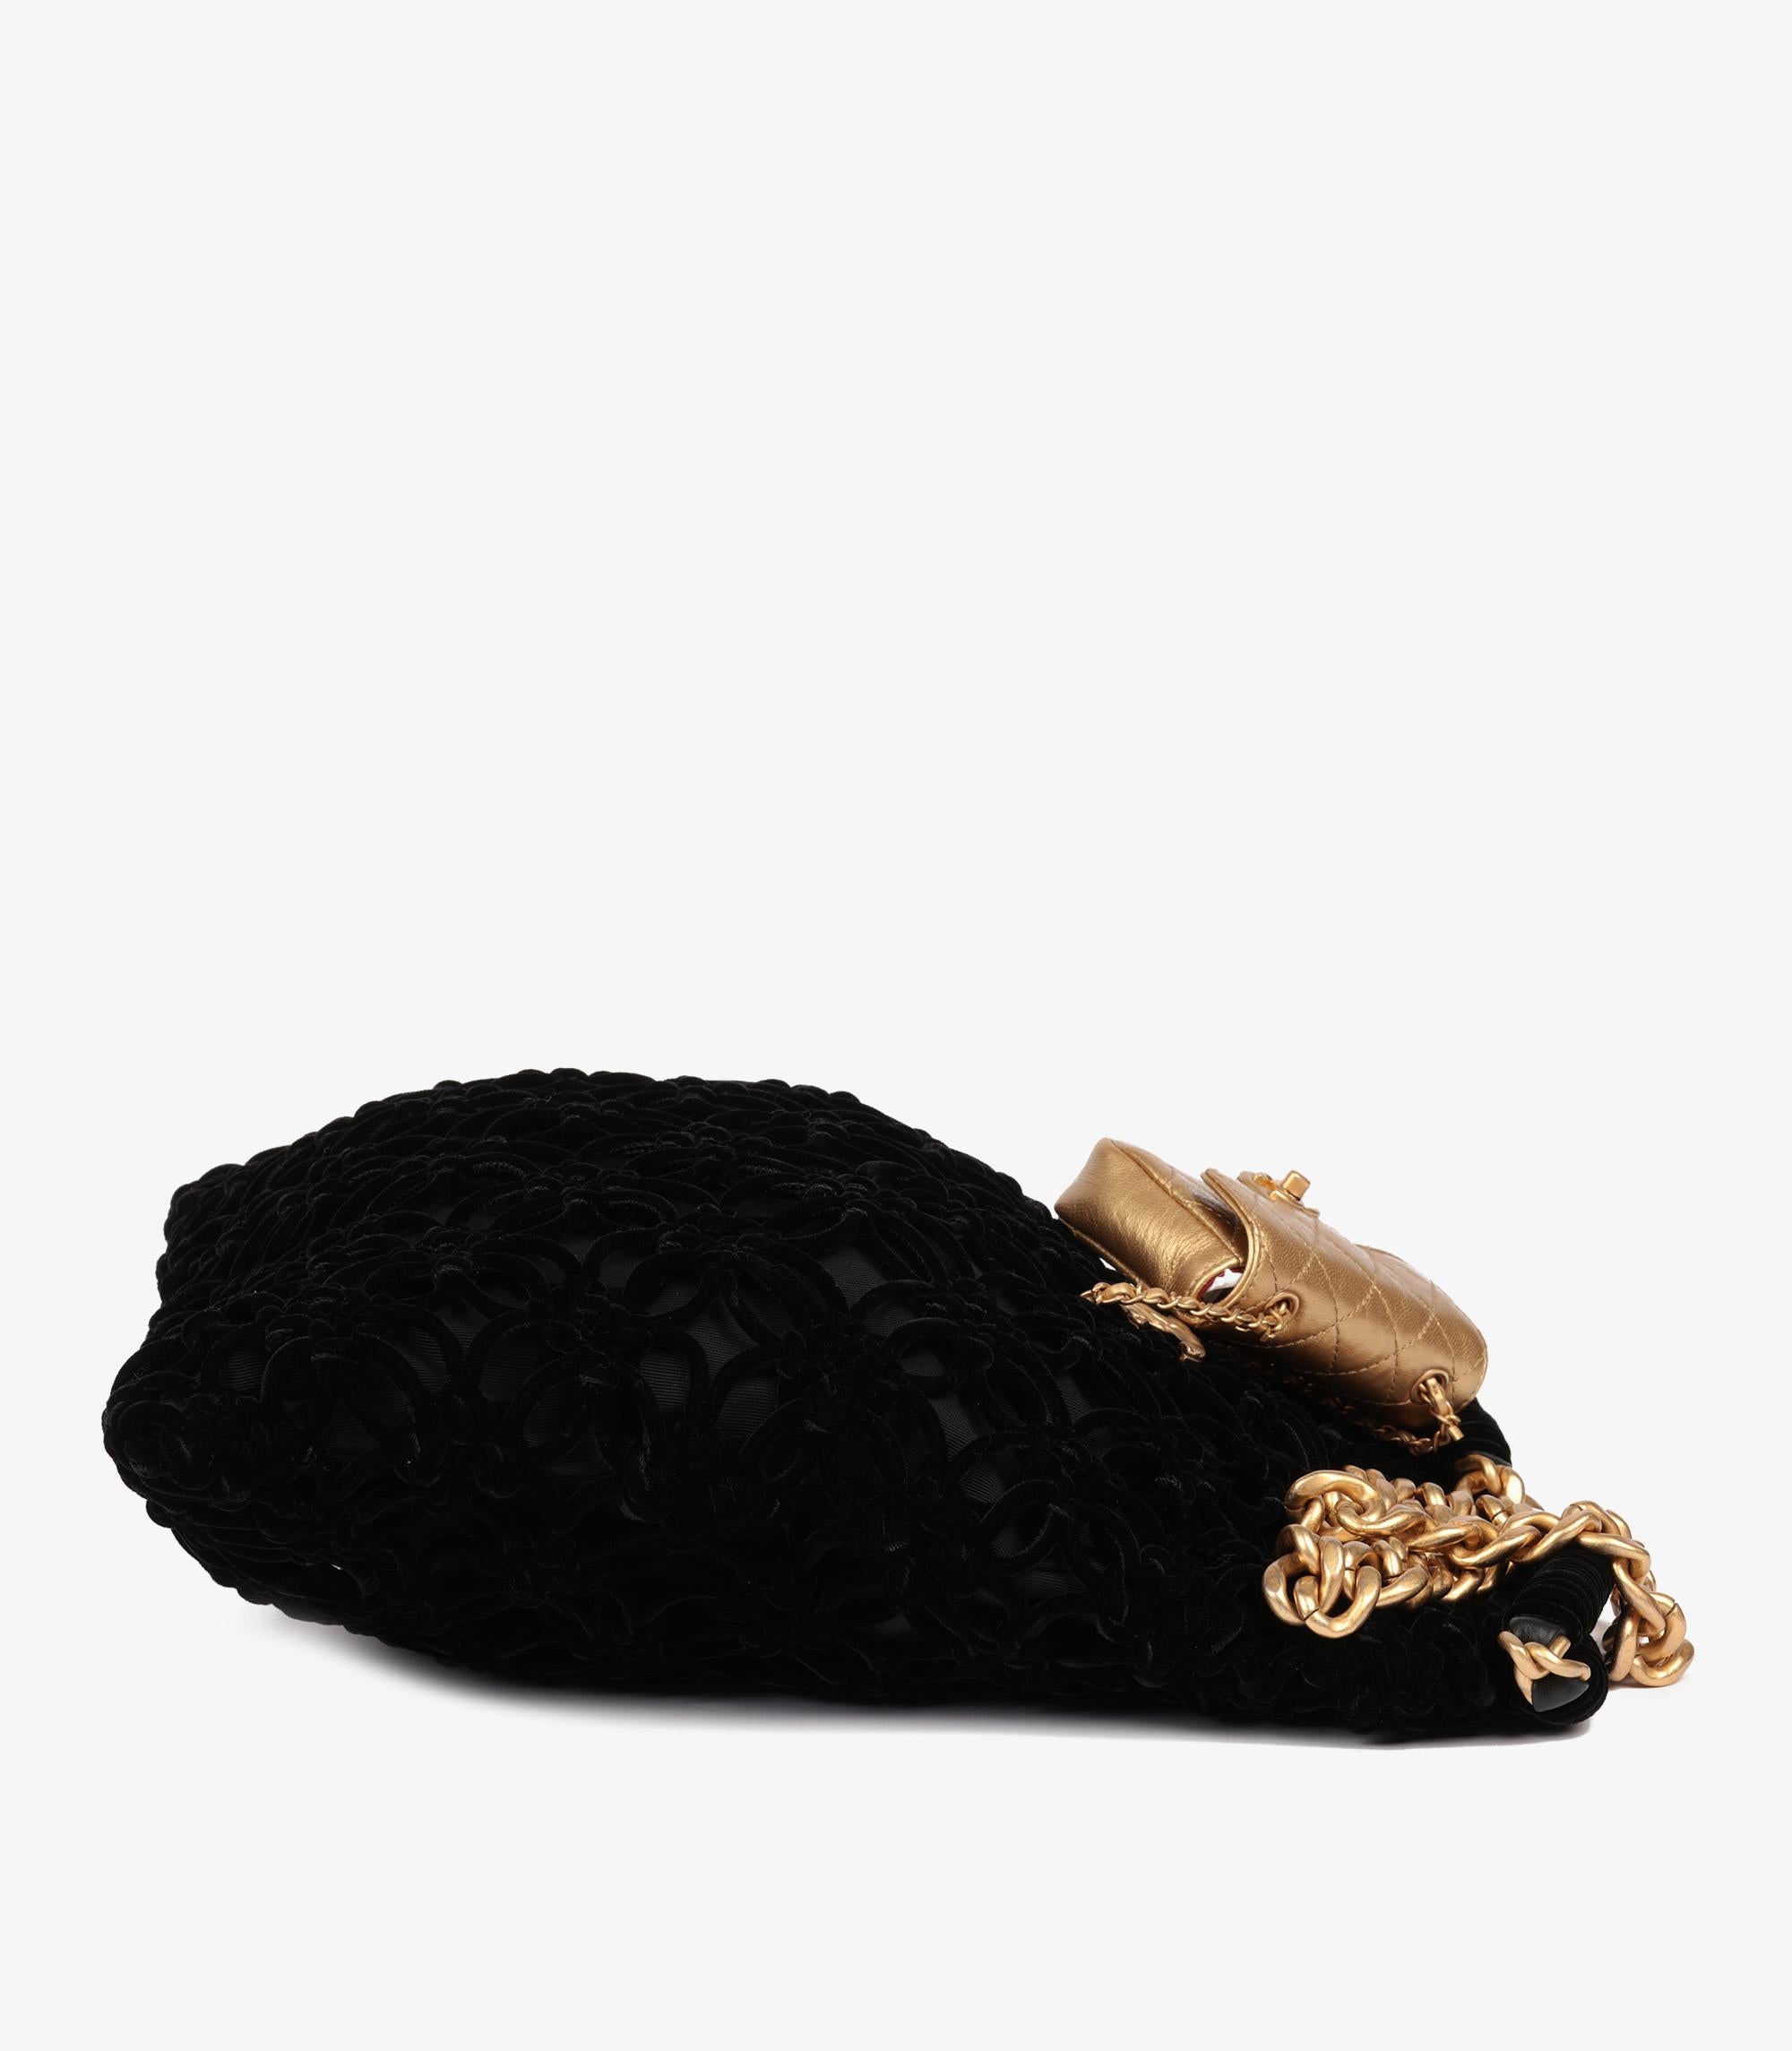 Chanel Black Braided Velvet & Gold Metallic Lambskin Shopping Tote For Sale 1